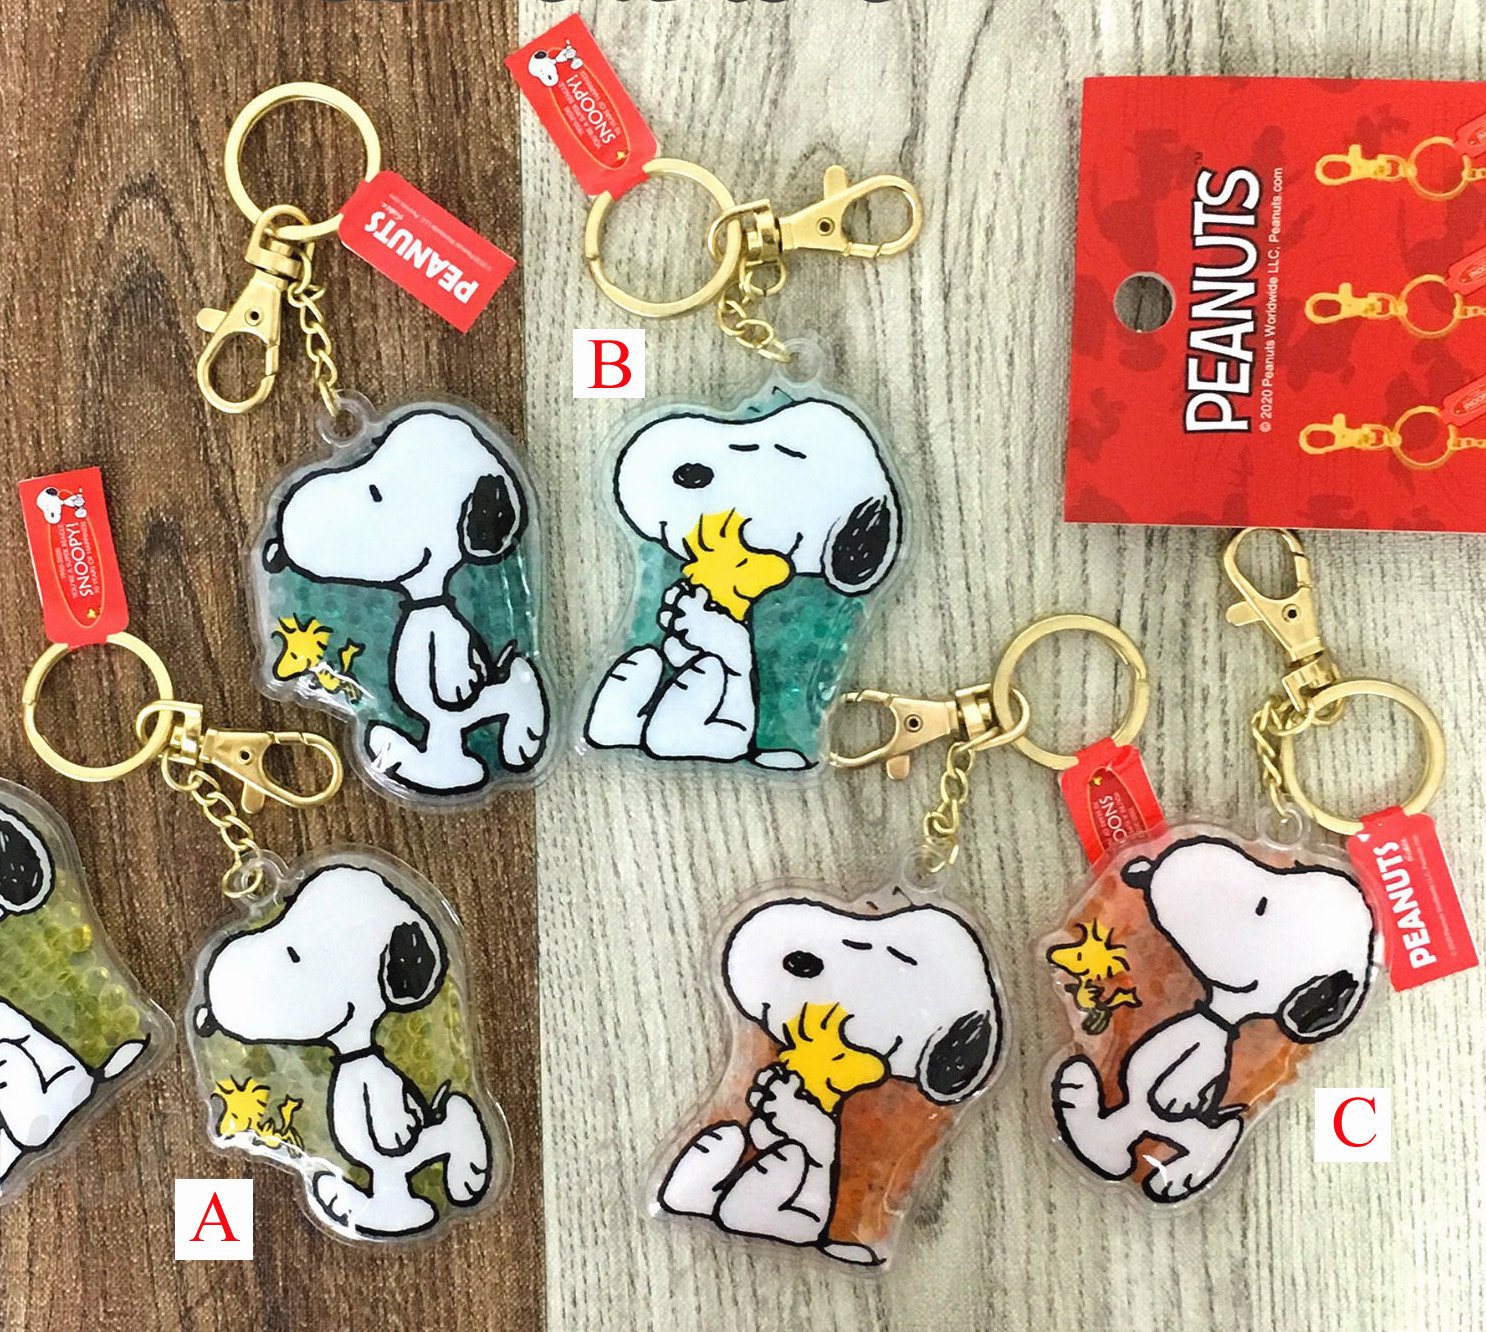 【卡漫迷】 Snoopy 水晶珠 鑰匙圈 五選一 ㊣版 史奴比 史努比 扣環 鎖圈 吊飾 花生漫畫 糊塗塔克